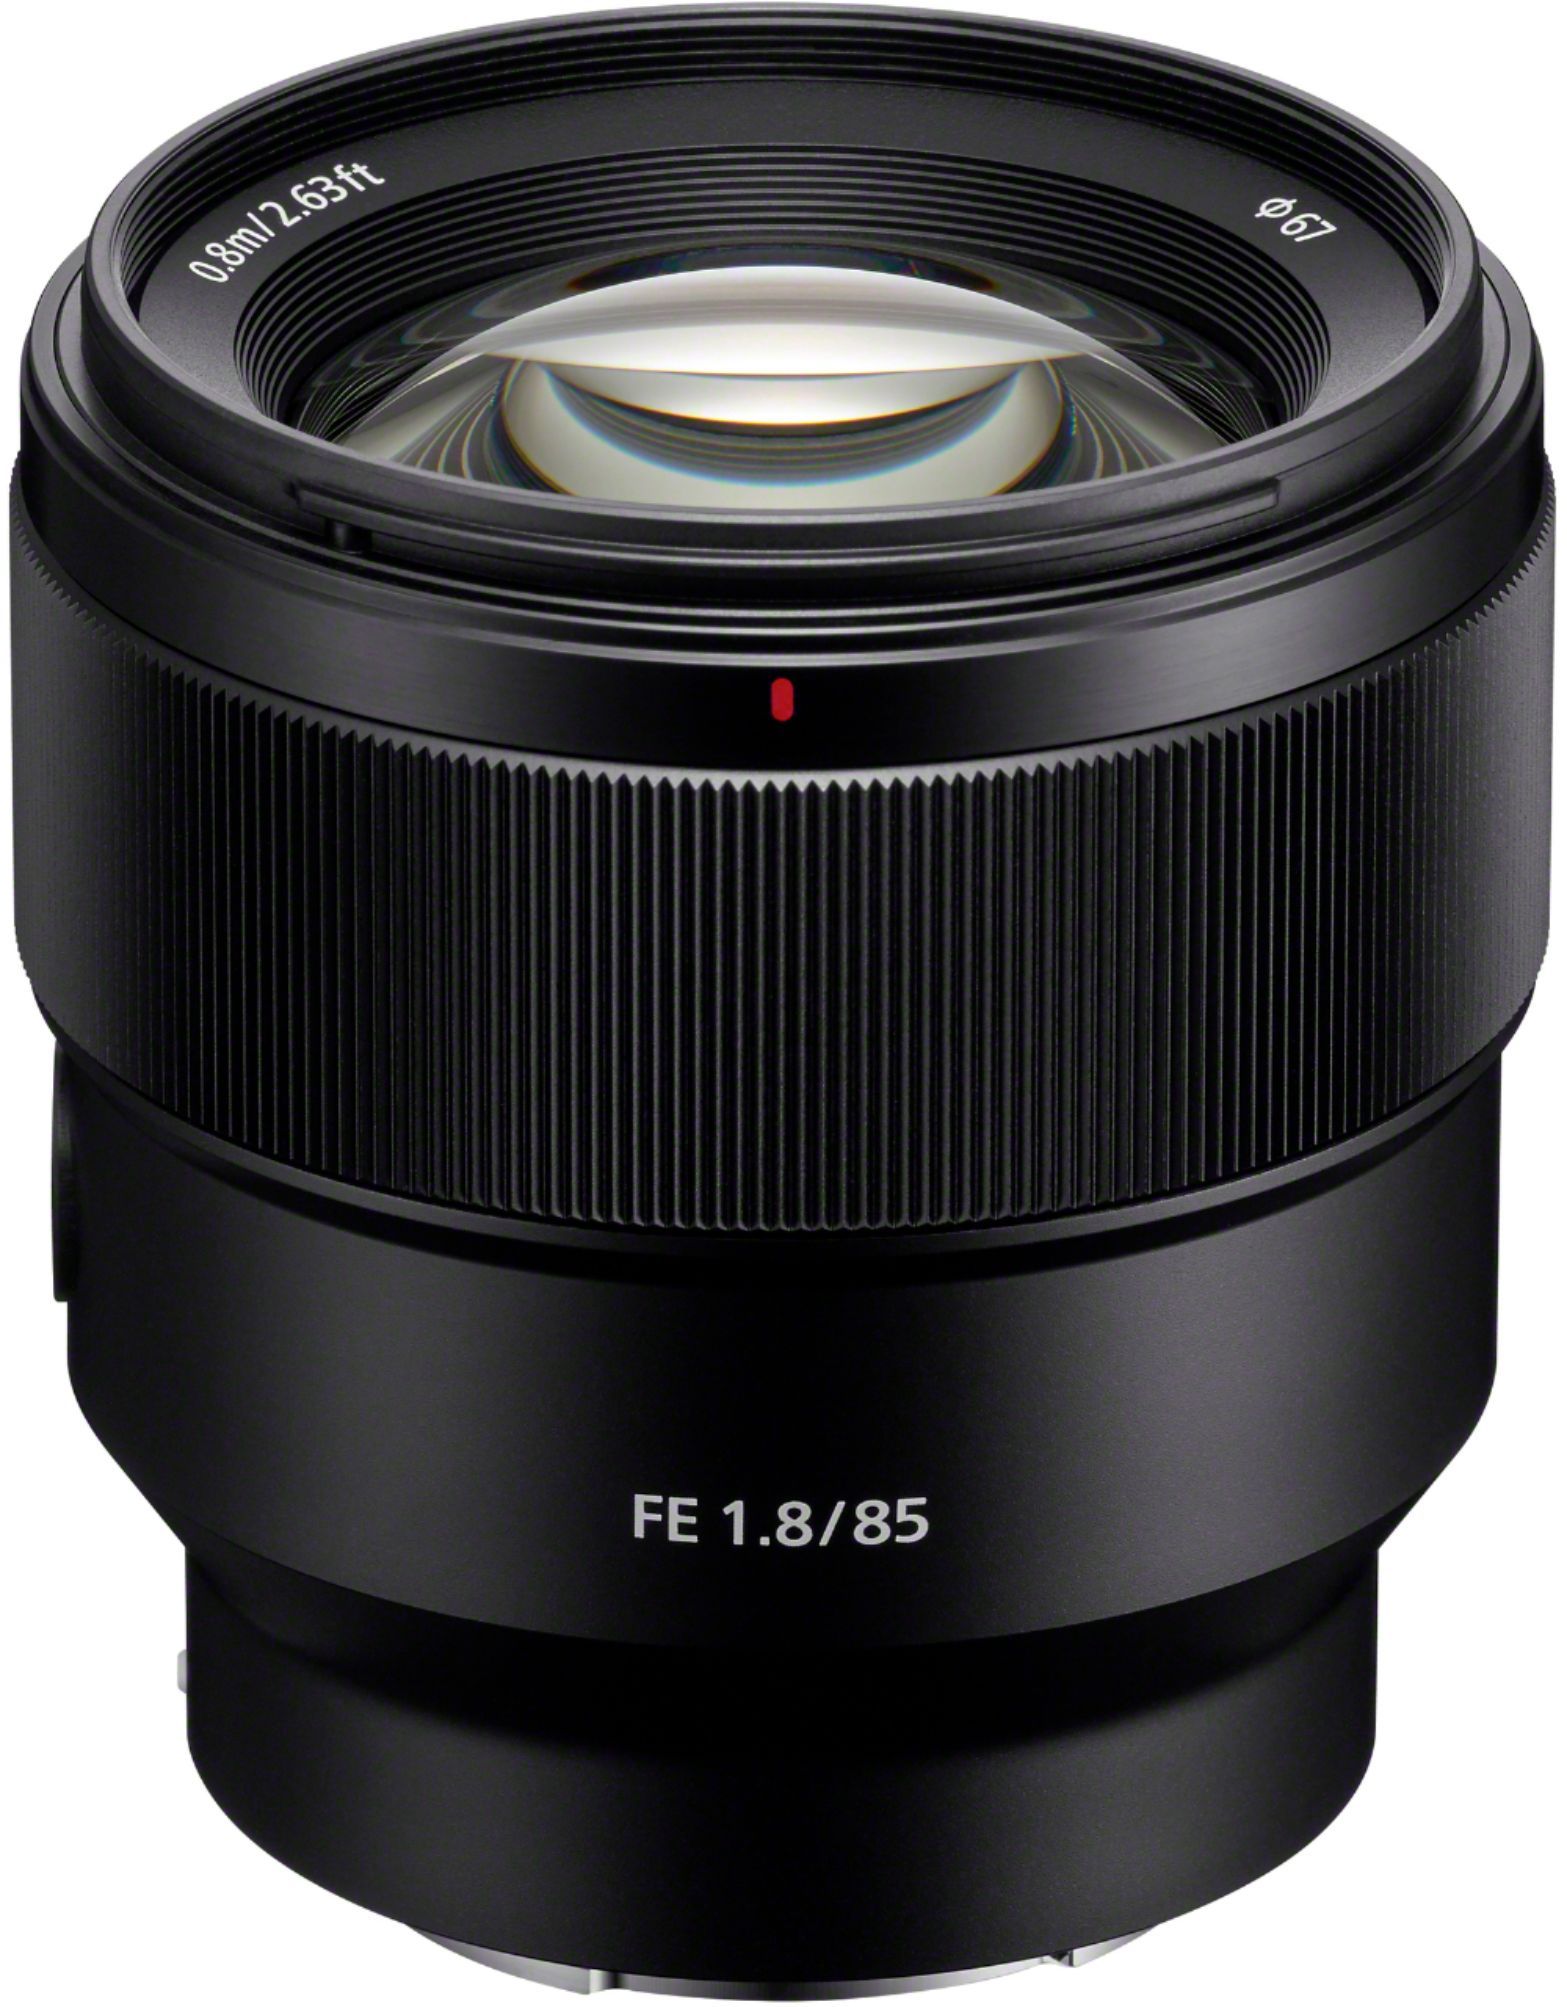 Sony FE 85mm f/1.8 Telephoto Prime Lens for E-mount Cameras Black SEL85F18/2 - Best Buy | Best Buy U.S.